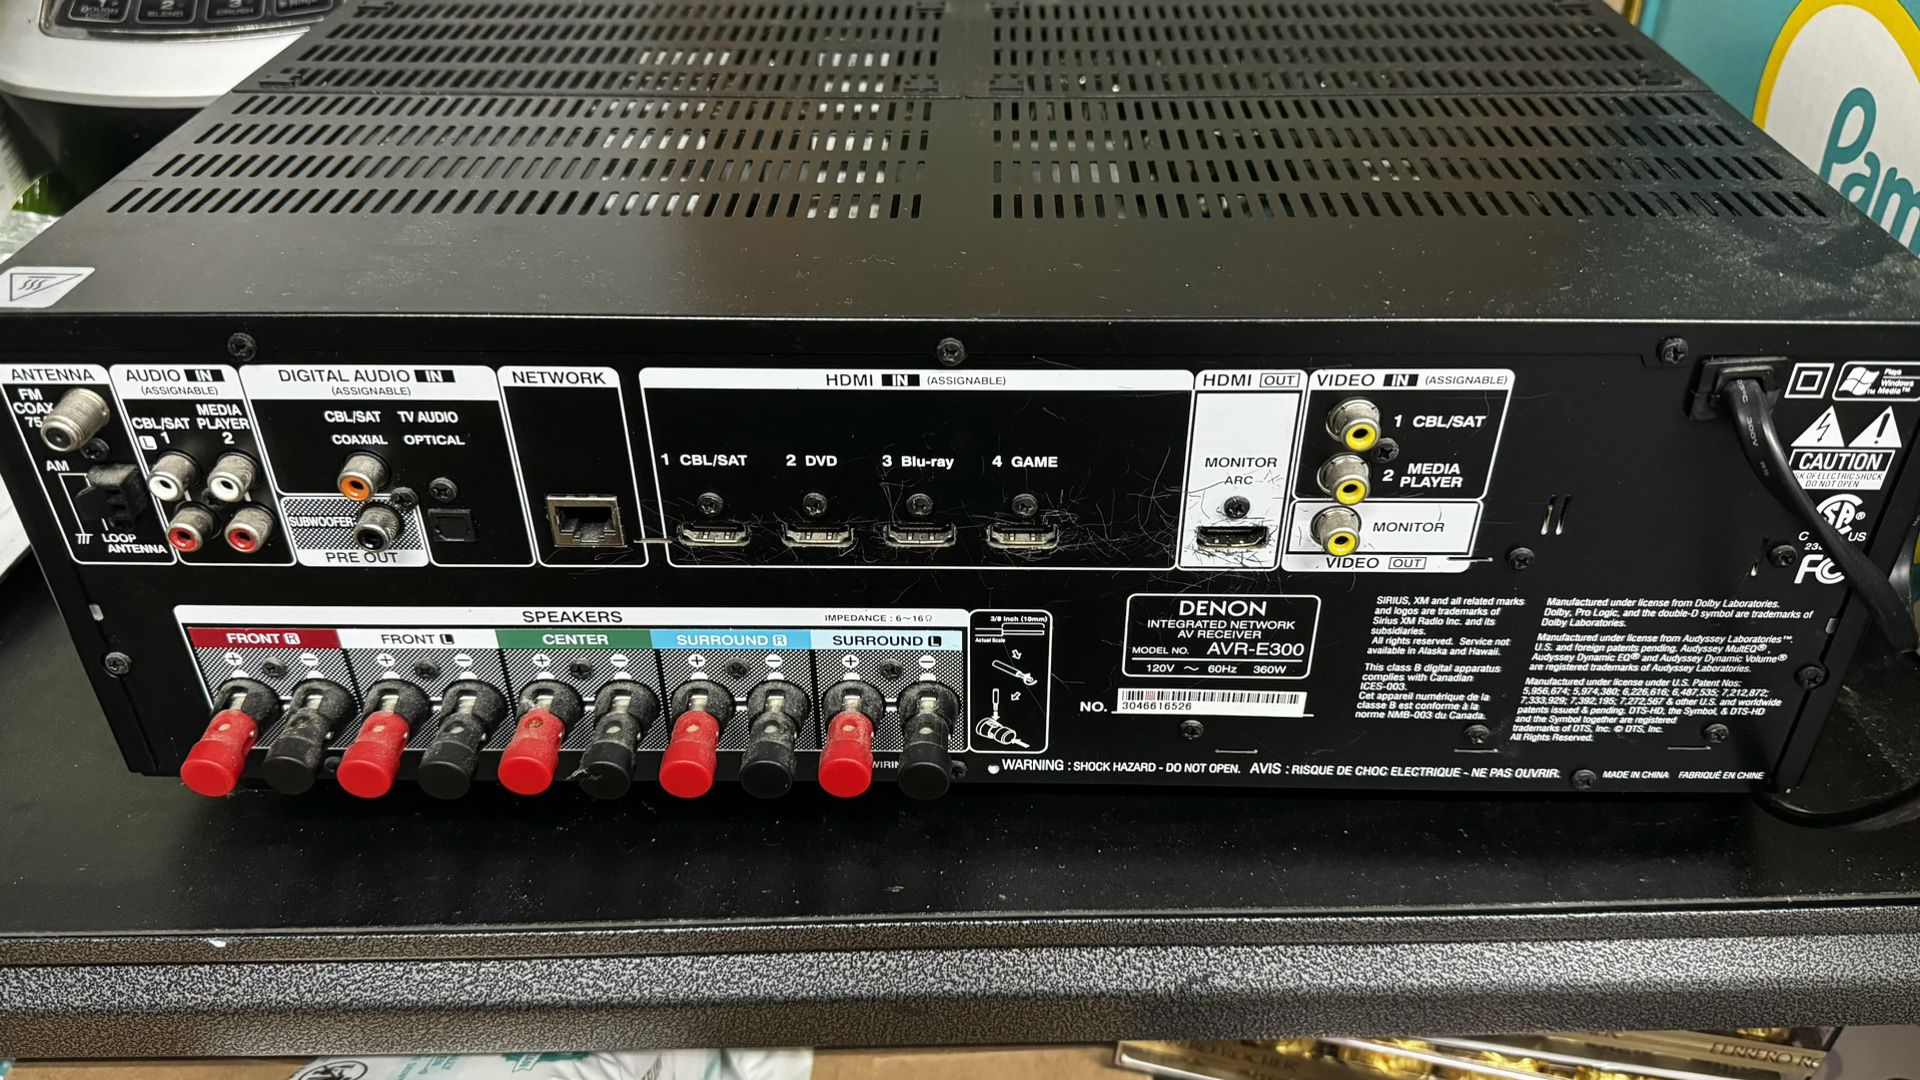 Bose/ Yamaha Speakers With Denon  AVR-E300 (5.1 Audio, Max 1080p Pass-thru)